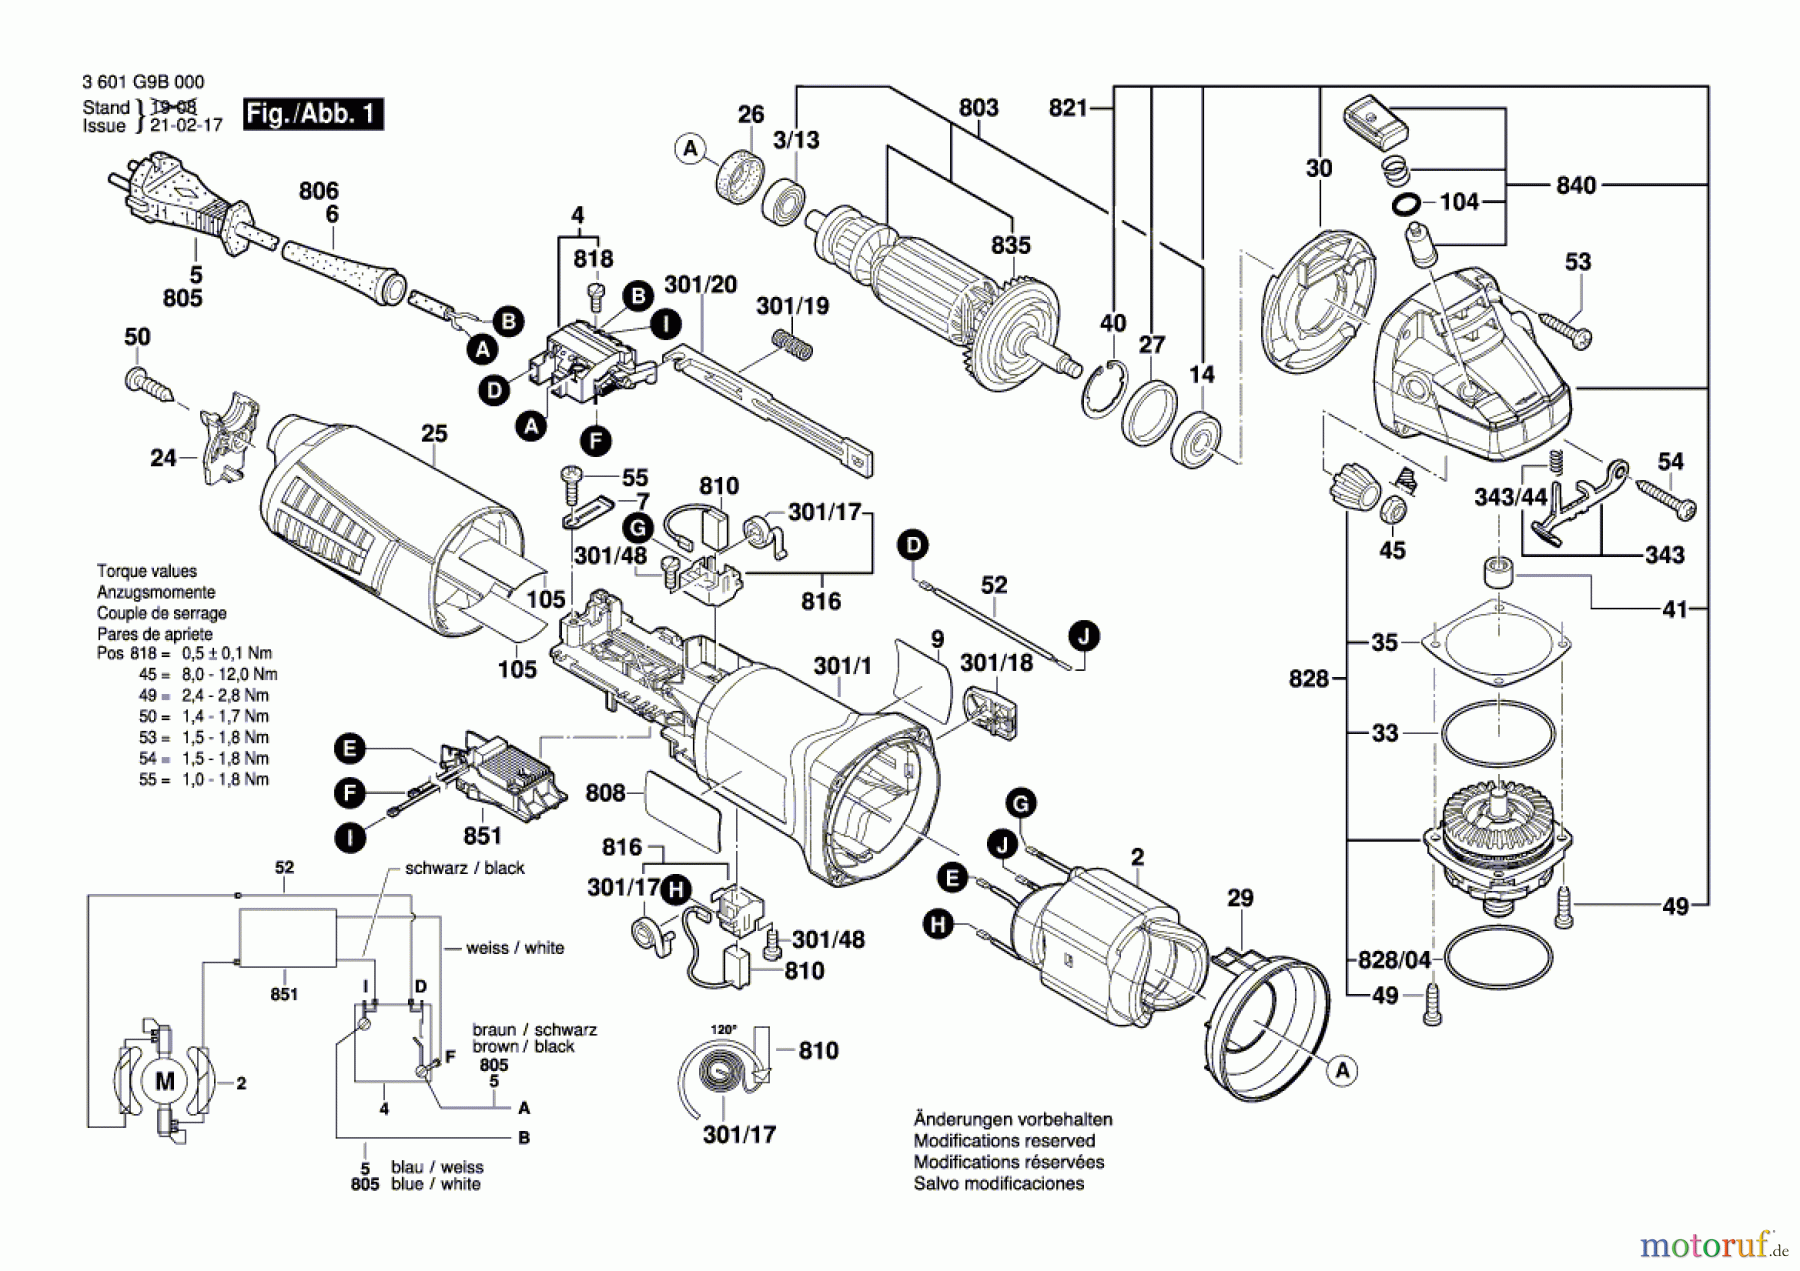  Bosch Werkzeug Winkelschleifer GWS 11-125 Seite 1